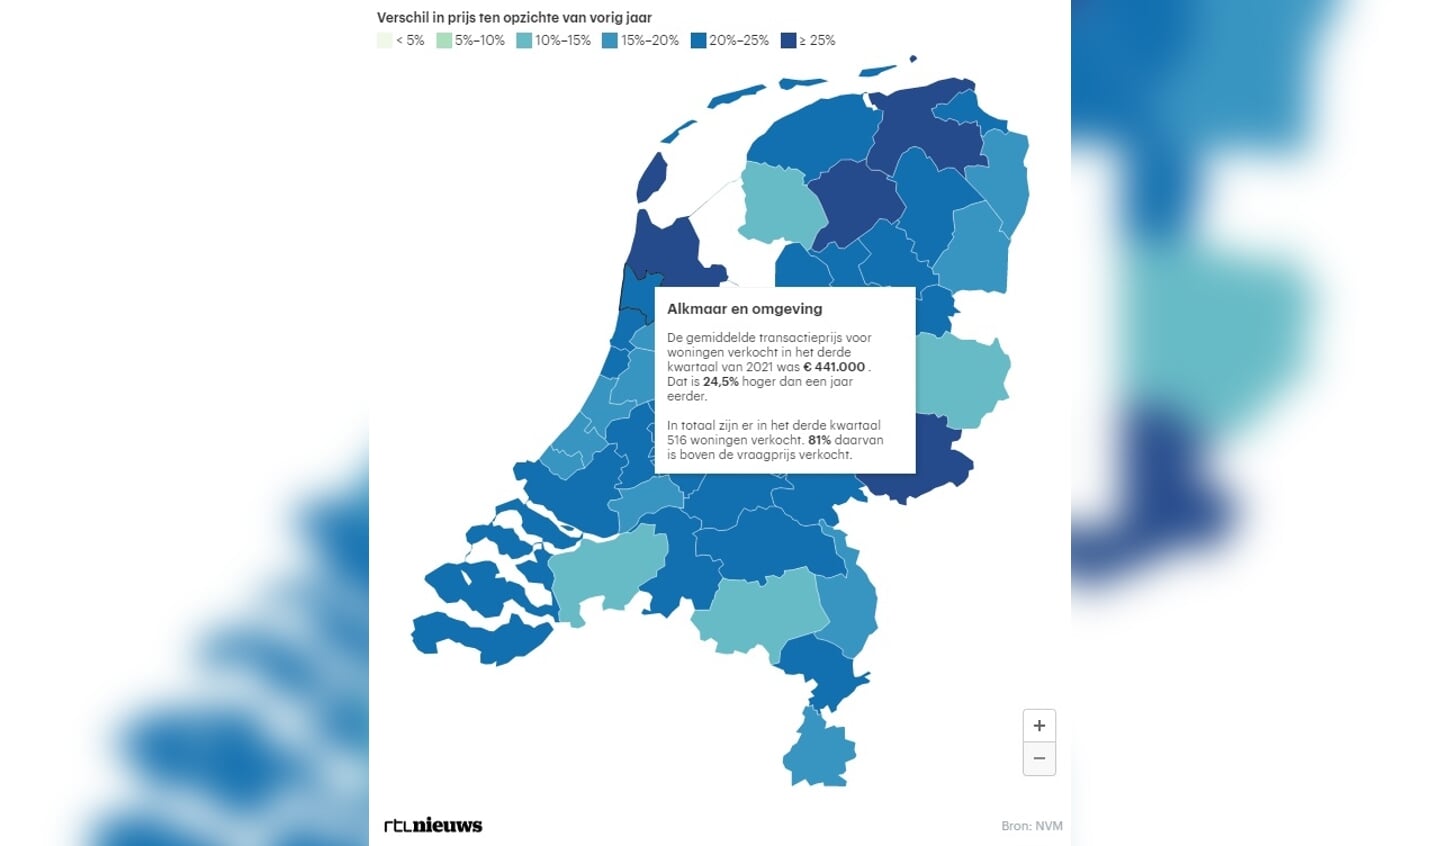 Woonontwikkelingen in de regio Alkmaar van het afgelopen kwartaal.